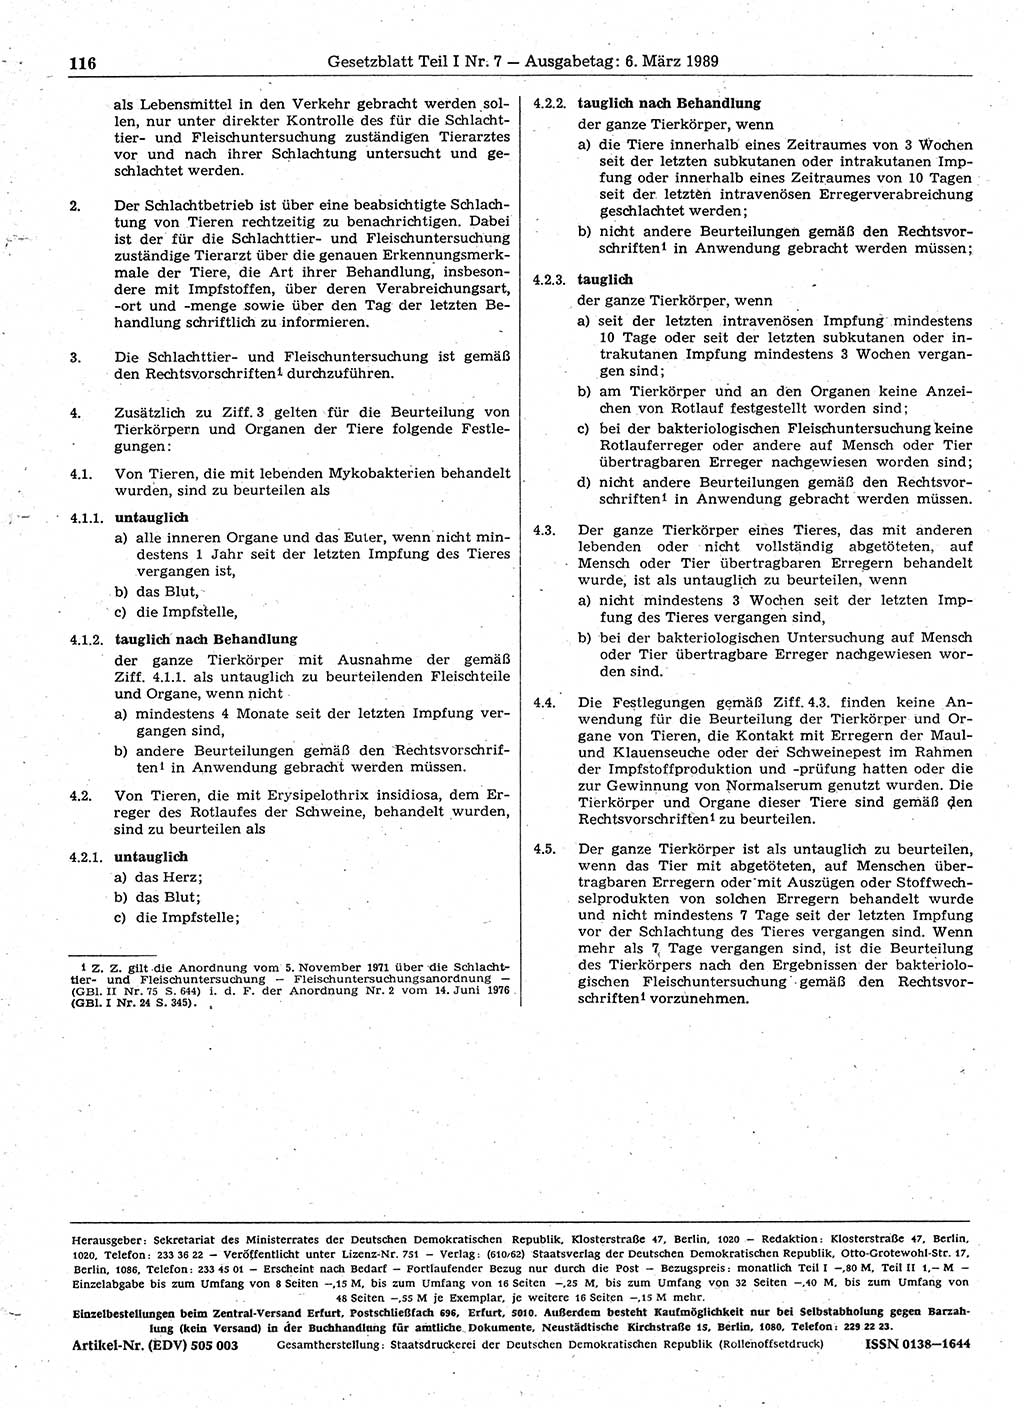 Gesetzblatt (GBl.) der Deutschen Demokratischen Republik (DDR) Teil Ⅰ 1989, Seite 116 (GBl. DDR Ⅰ 1989, S. 116)